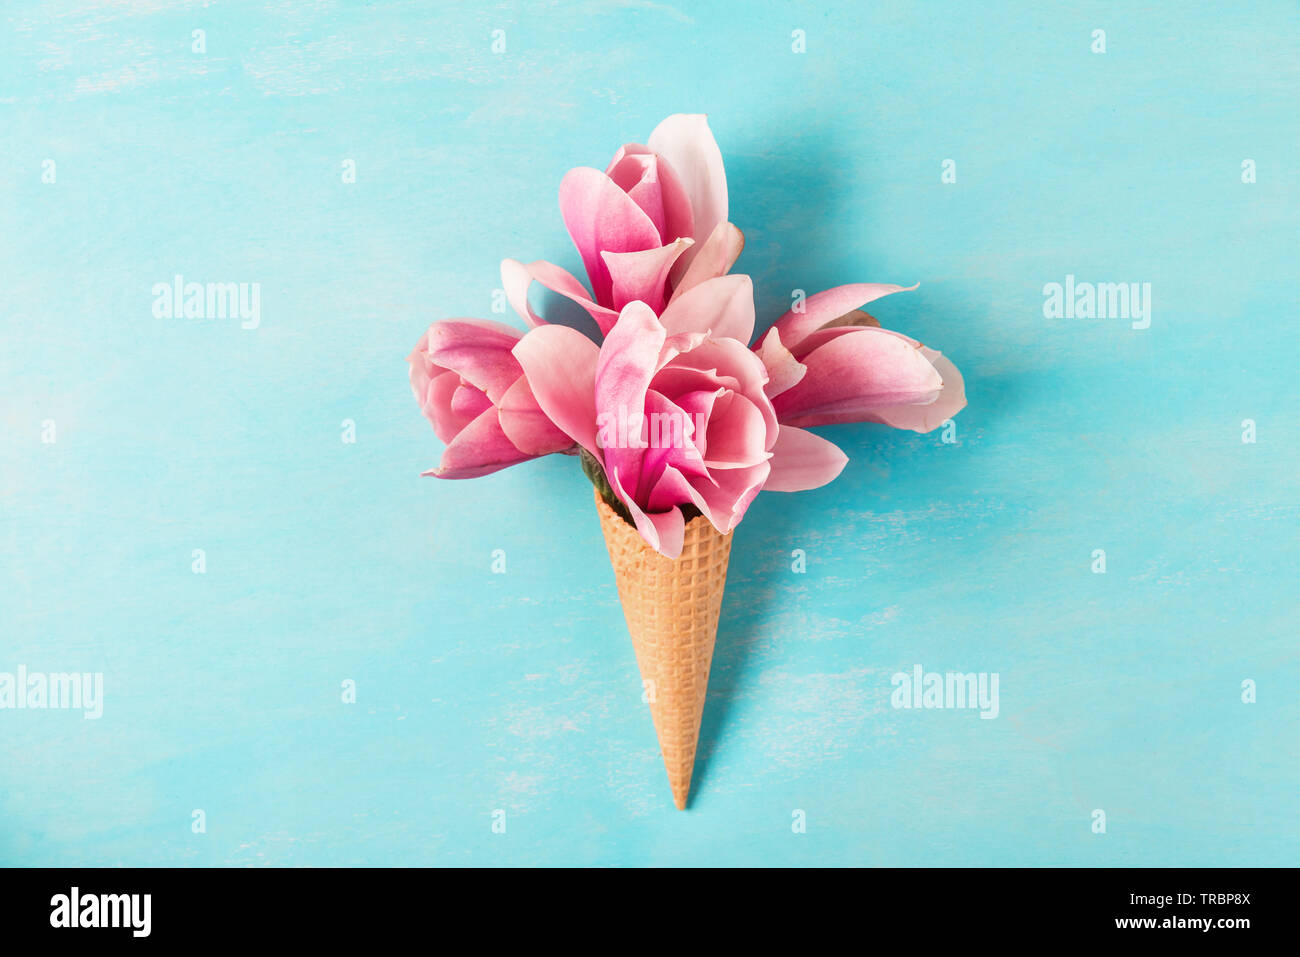 Cornet de crème glacée avec magnolia rose bouquet de fleurs sur fond bleu. Concept de printemps minimes. Télévision lay. vue d'en haut. fond de mariage Banque D'Images